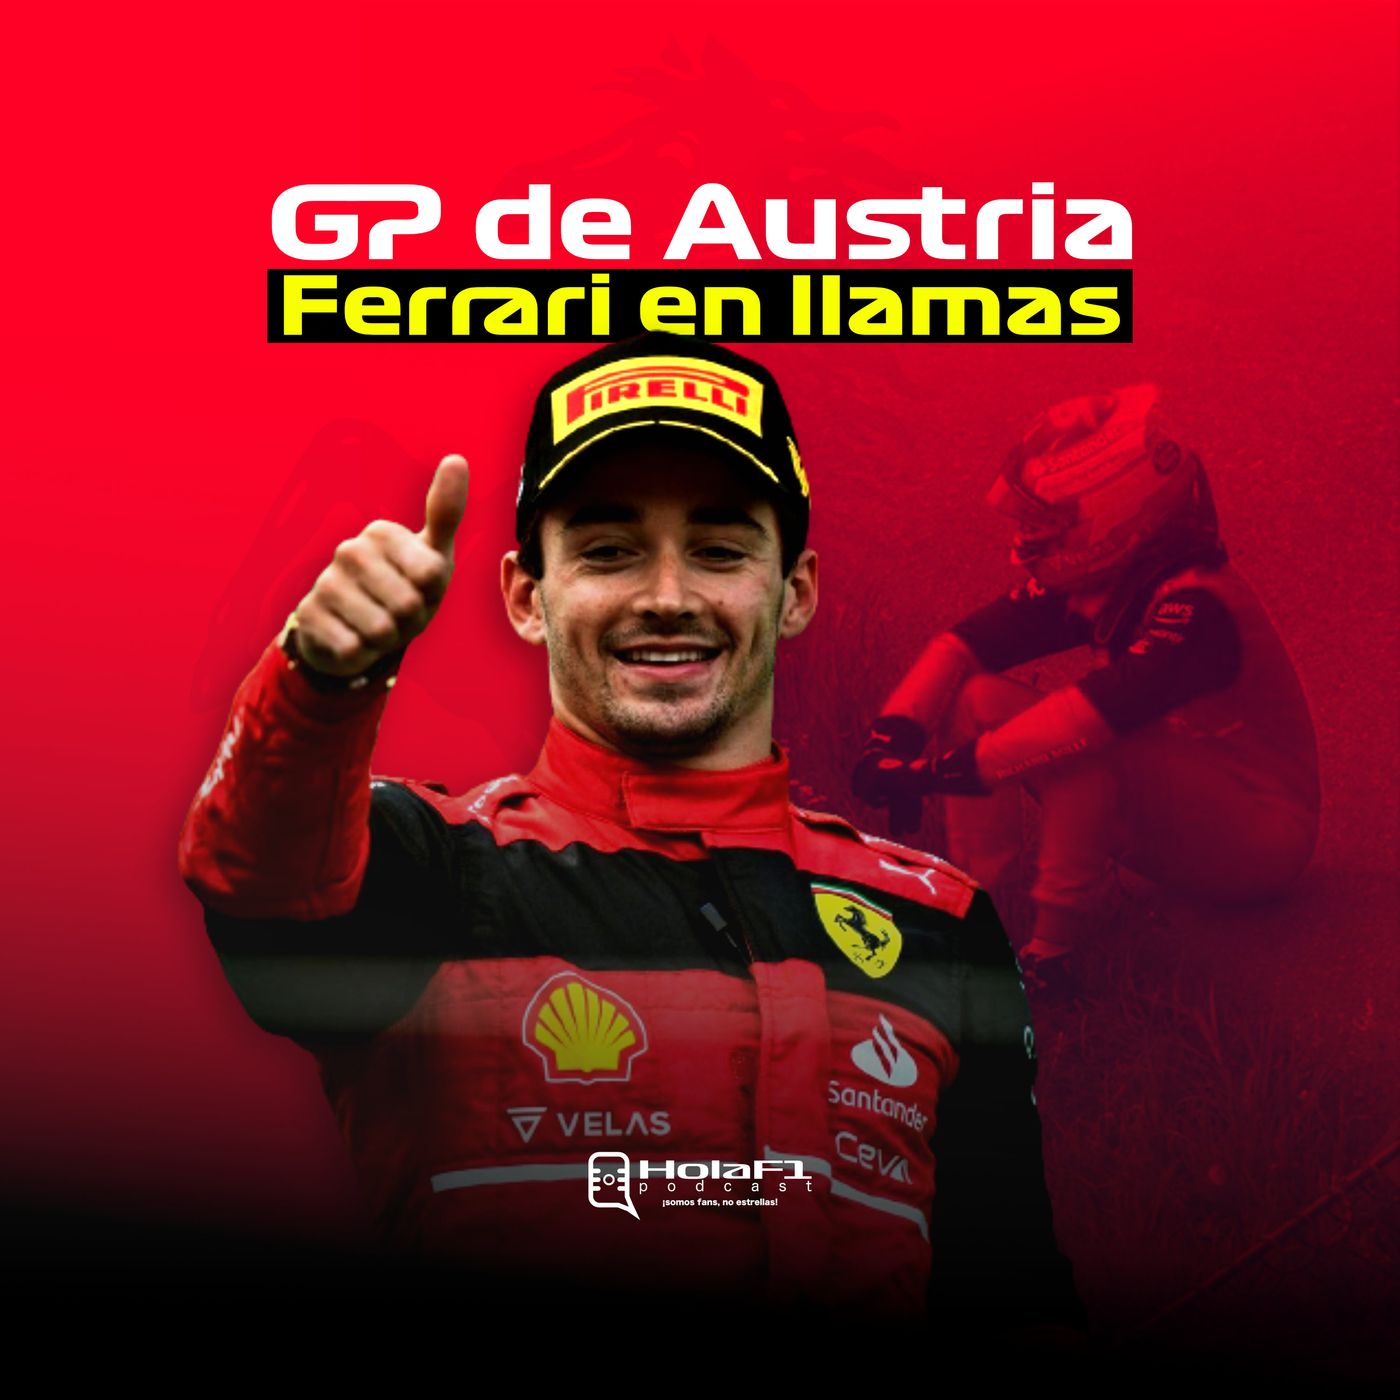 Ferrari en llamas 🔥 GP de Austria